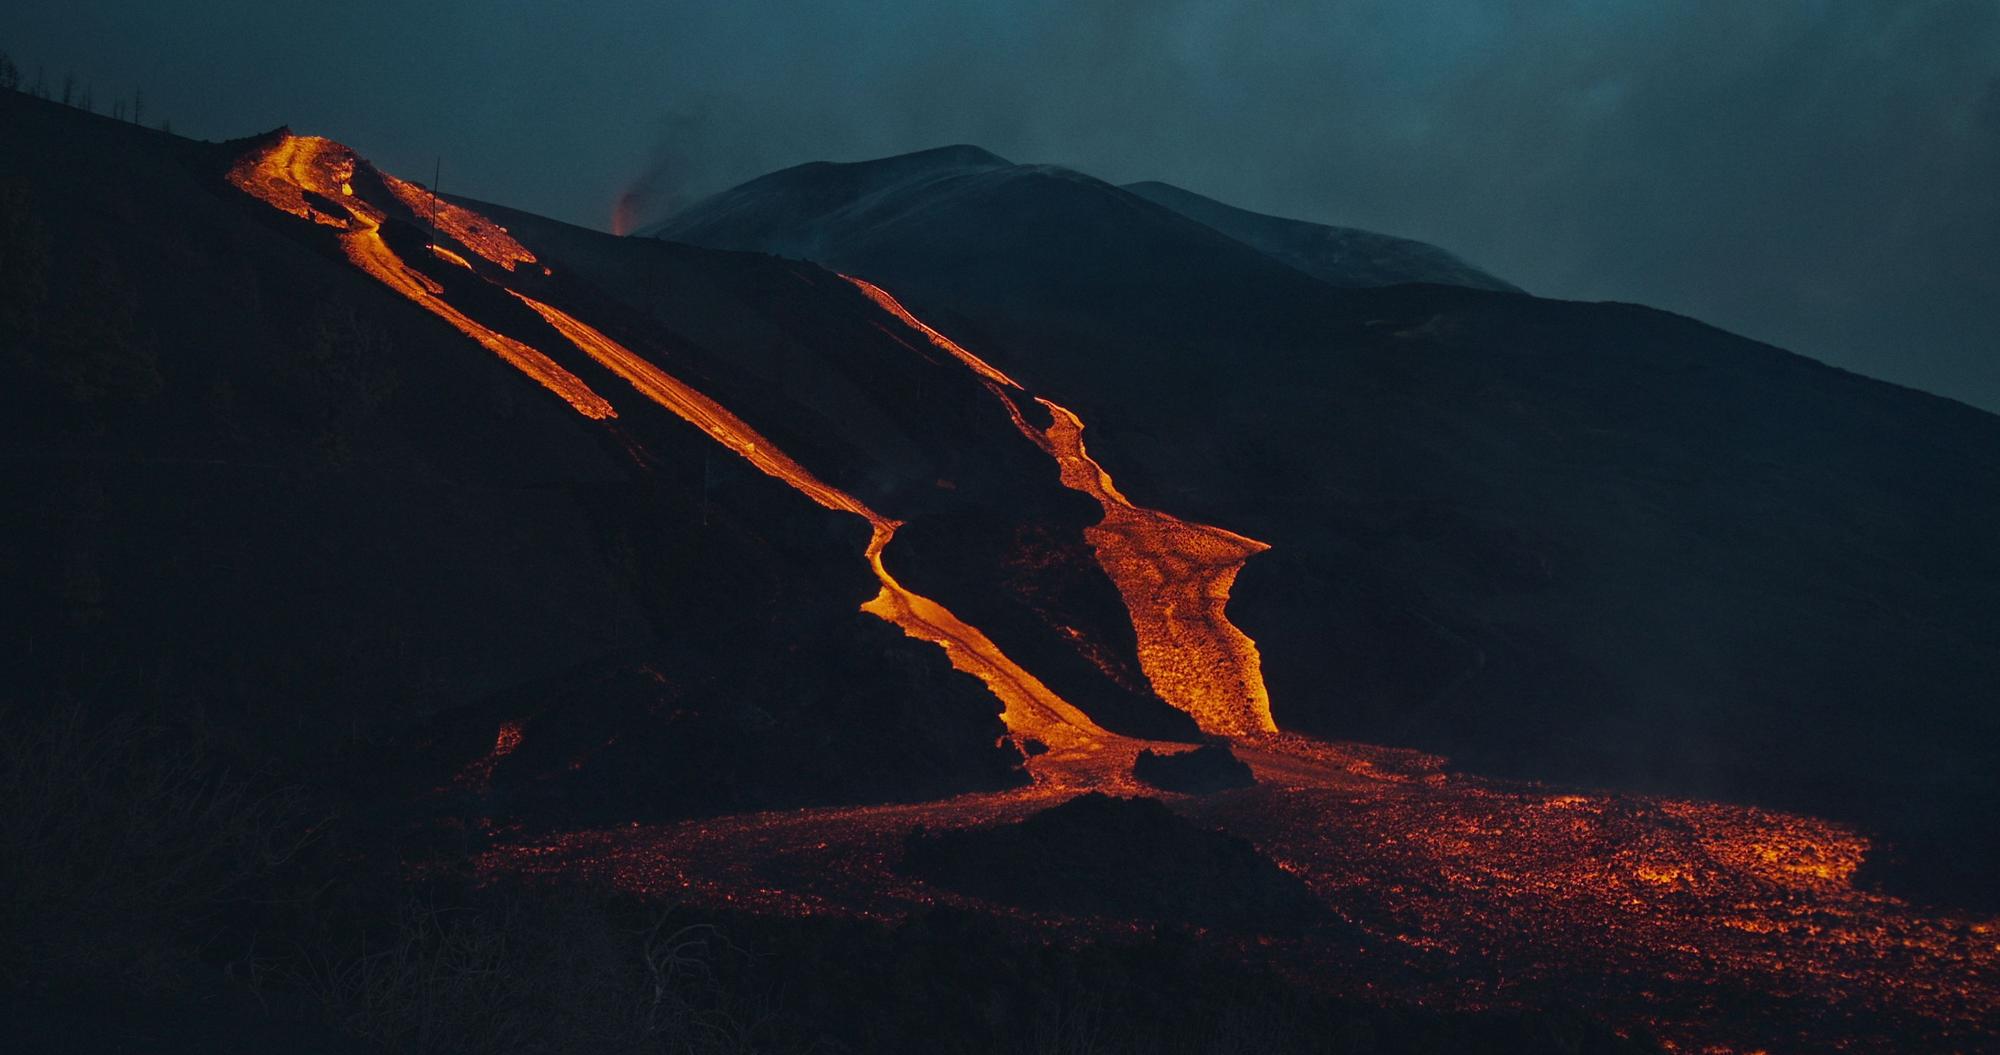 En imágenes: Grabación del documental sobre el volcán de La Palma